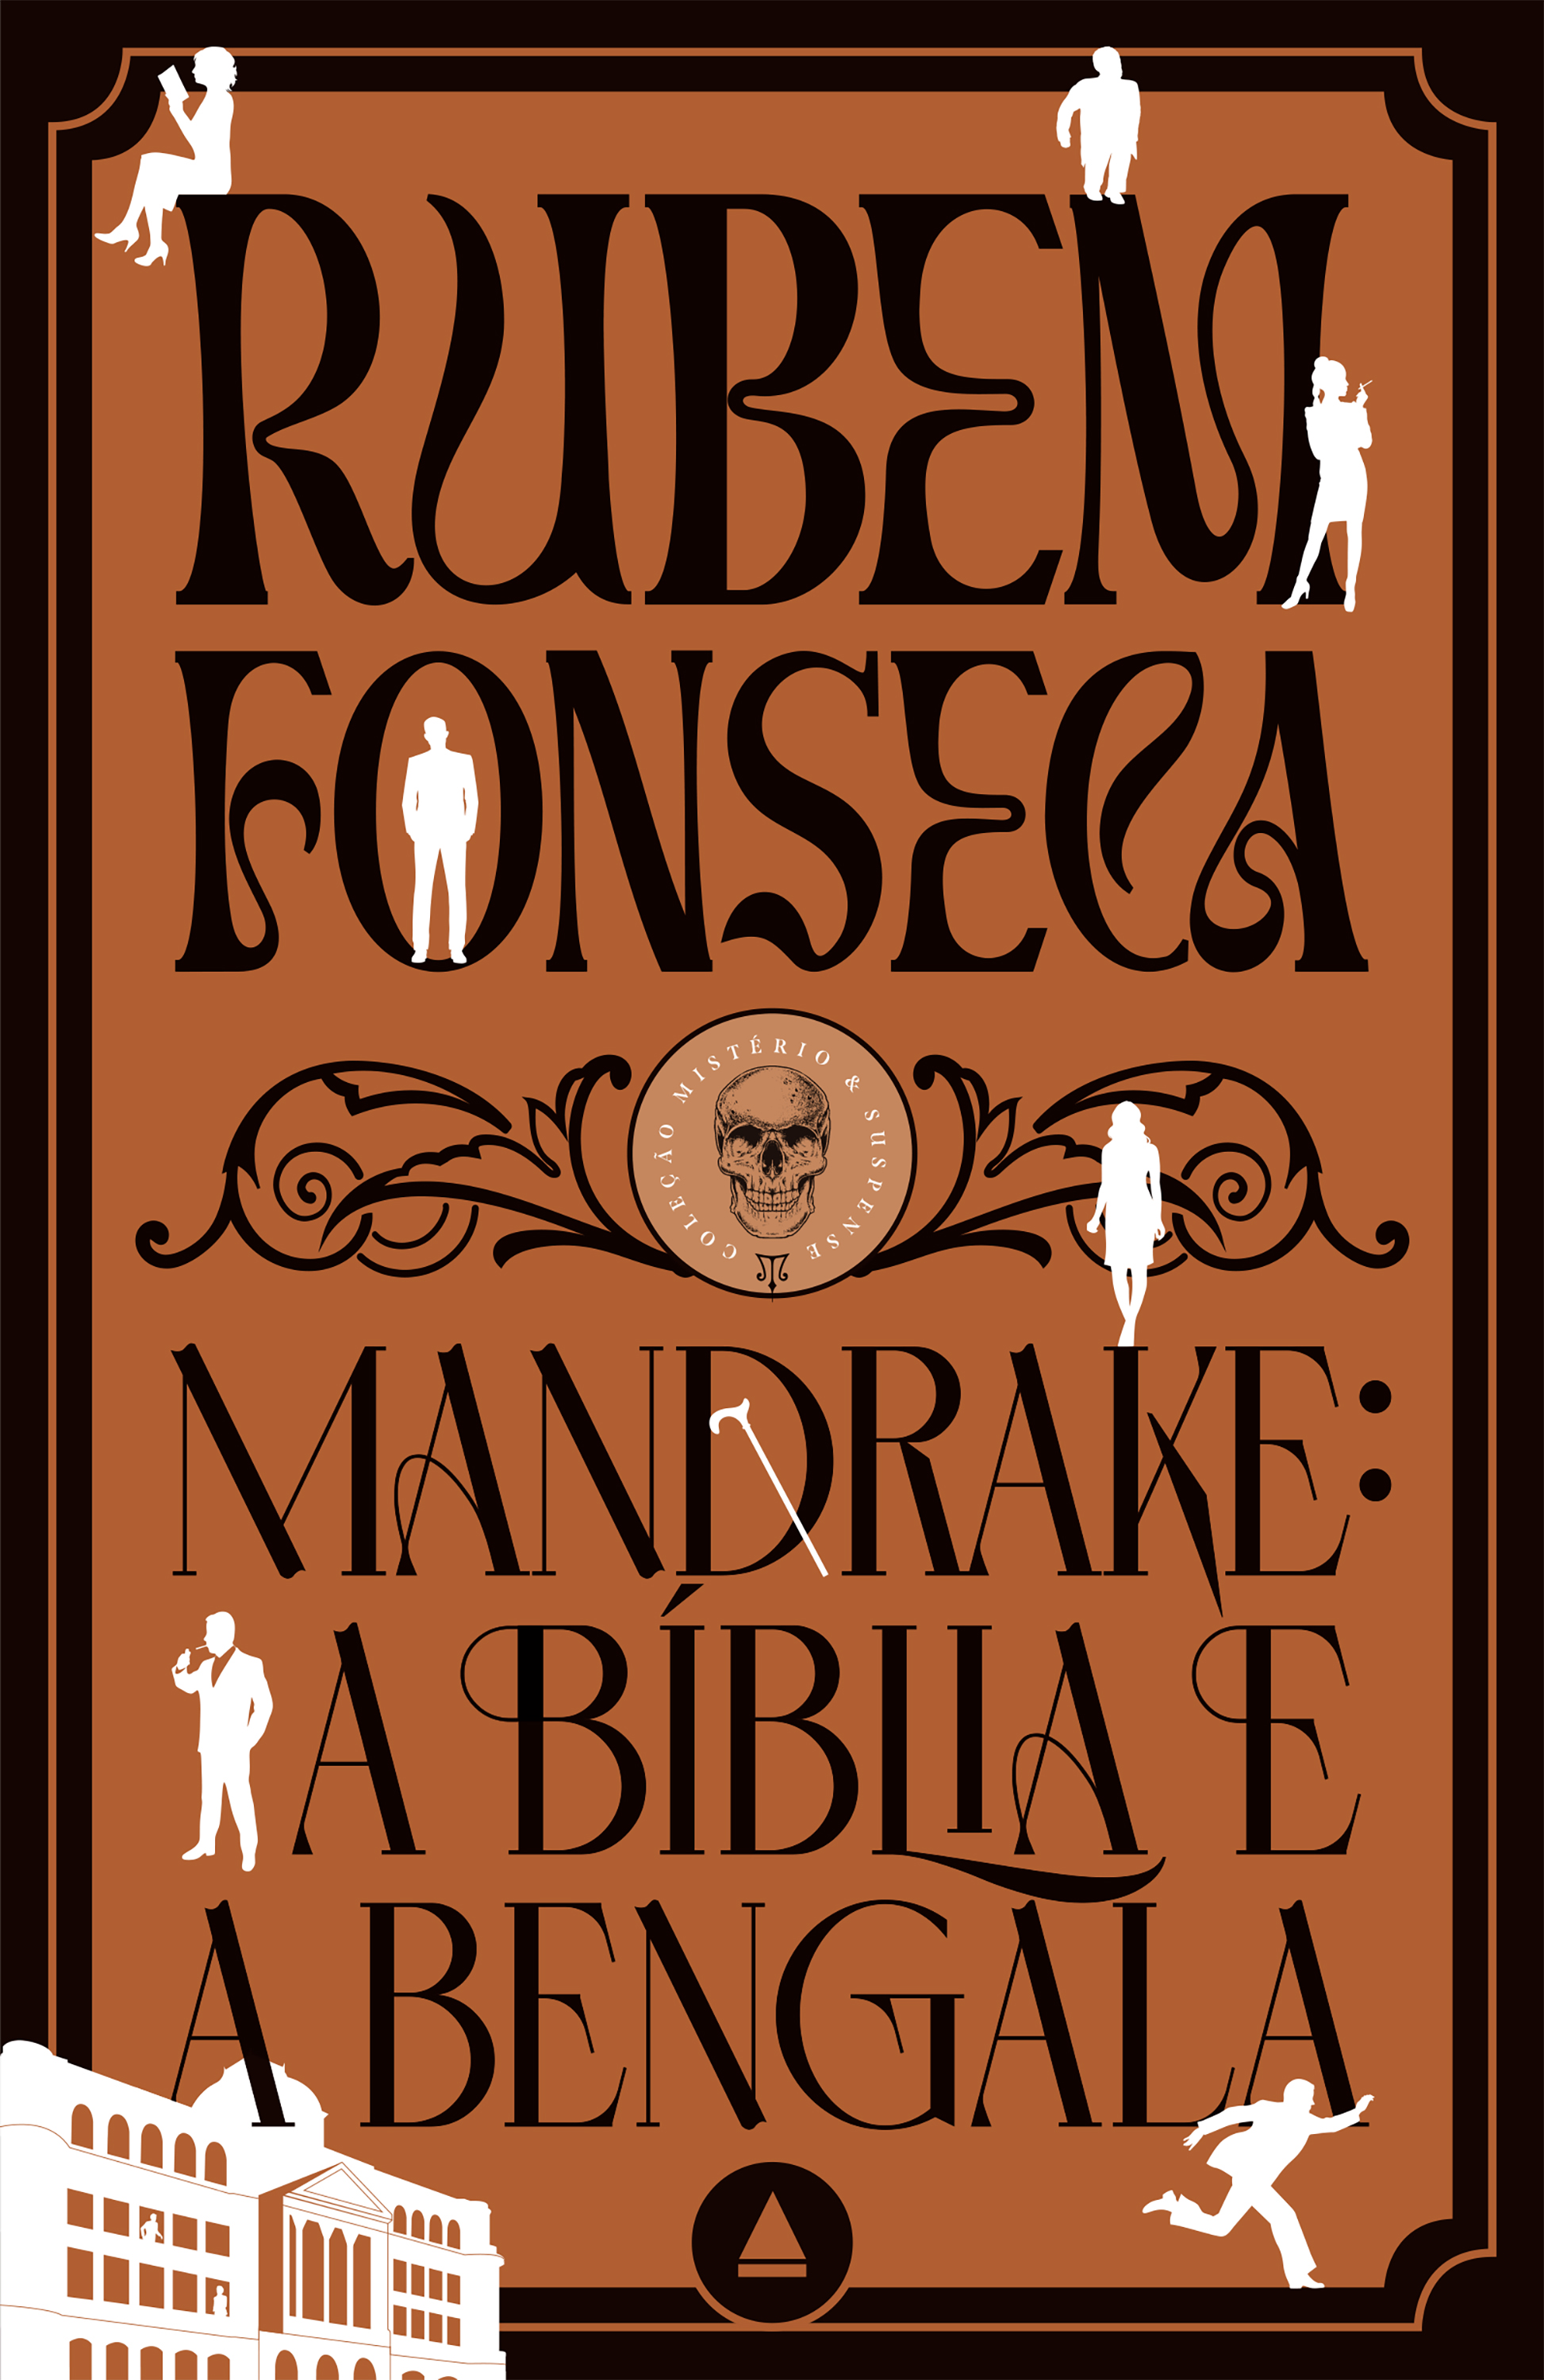 Mandrake: a Bíblia e a bengala - Coleção Mistério & Suspense